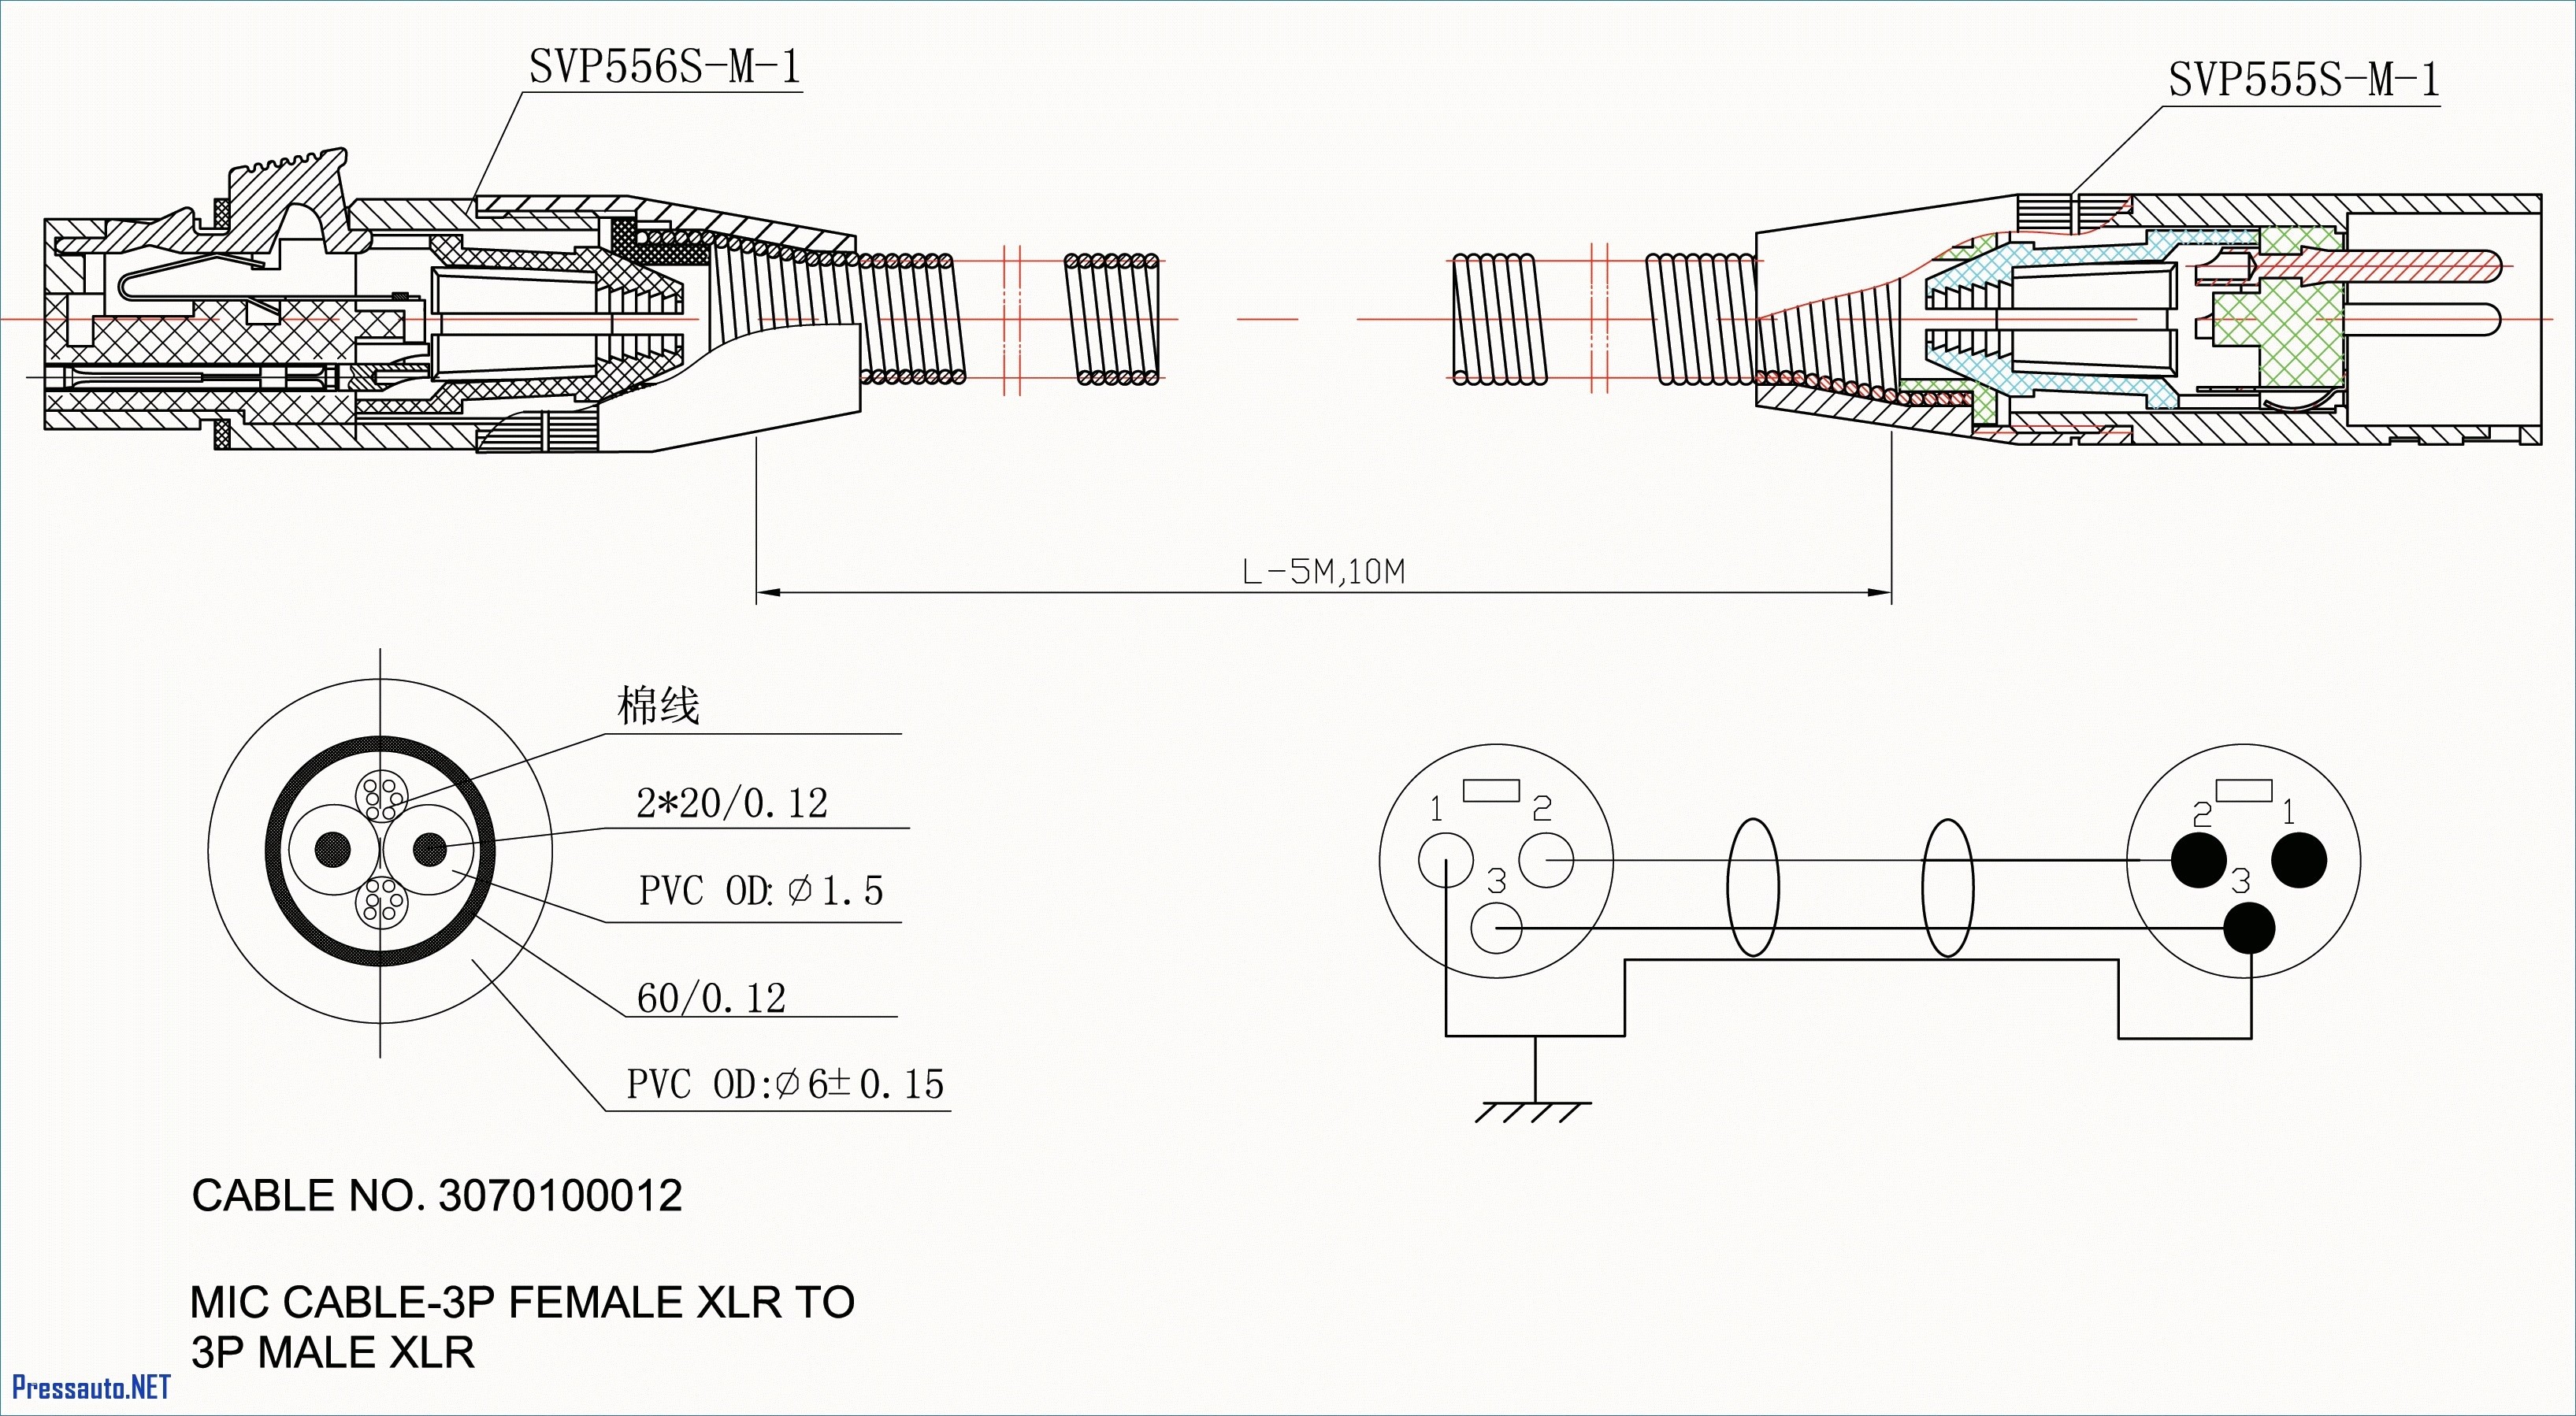 Ford Truck Trailer Plug Wiring Diagram 7 Way Rv Plug Wiring Diagram Of Ford Truck Trailer Plug Wiring Diagram